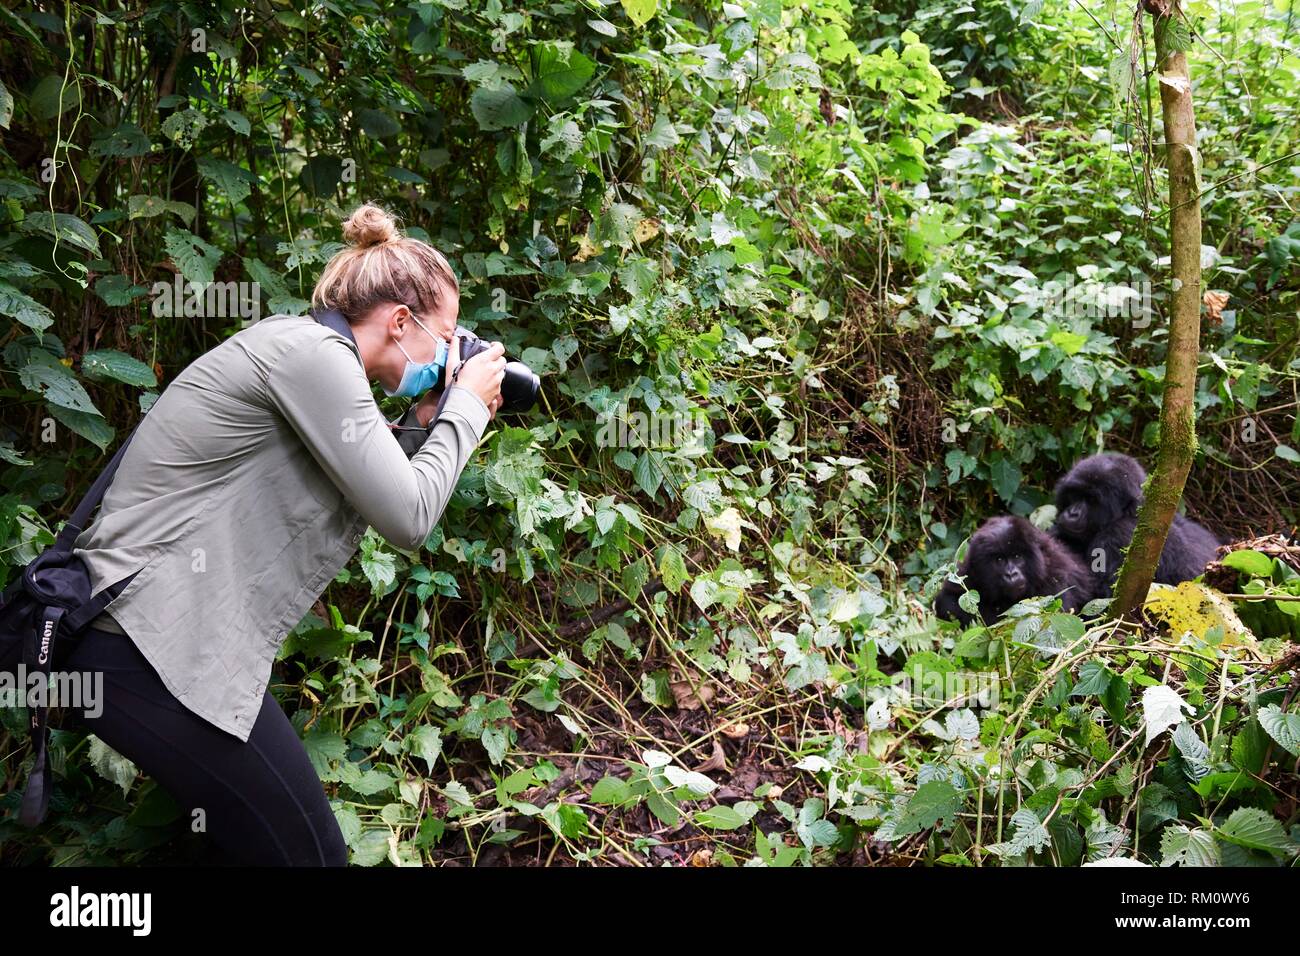 Touristen fotografieren Berggorilla (Gorilla beringei beringei). Alle Menschen haben Sicherheit Masken in Anwesenheit von Gorillas tragen alle zu vermeiden. Stockfoto